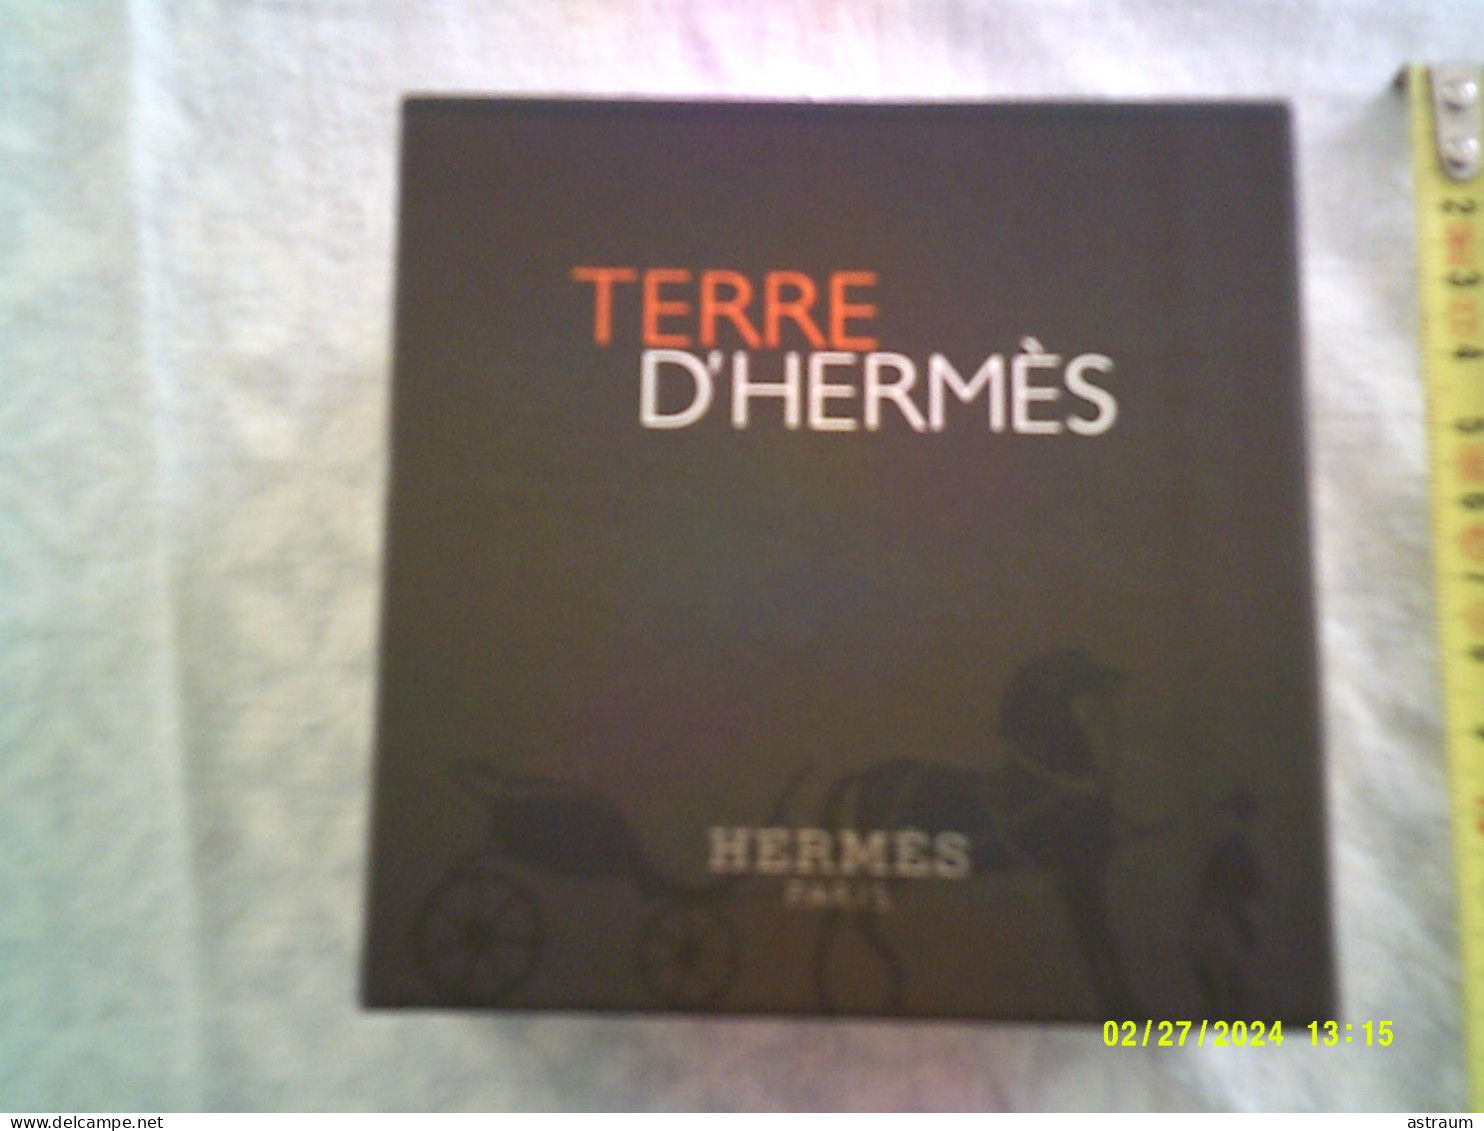 Coffret 2 Miniature Vaporisateur Parfum Hermes - EDT - Terre D'hermes Plein 12,5ml + Tube Emulsion Apres Rasage 15ml - Miniatures Hommes (avec Boite)